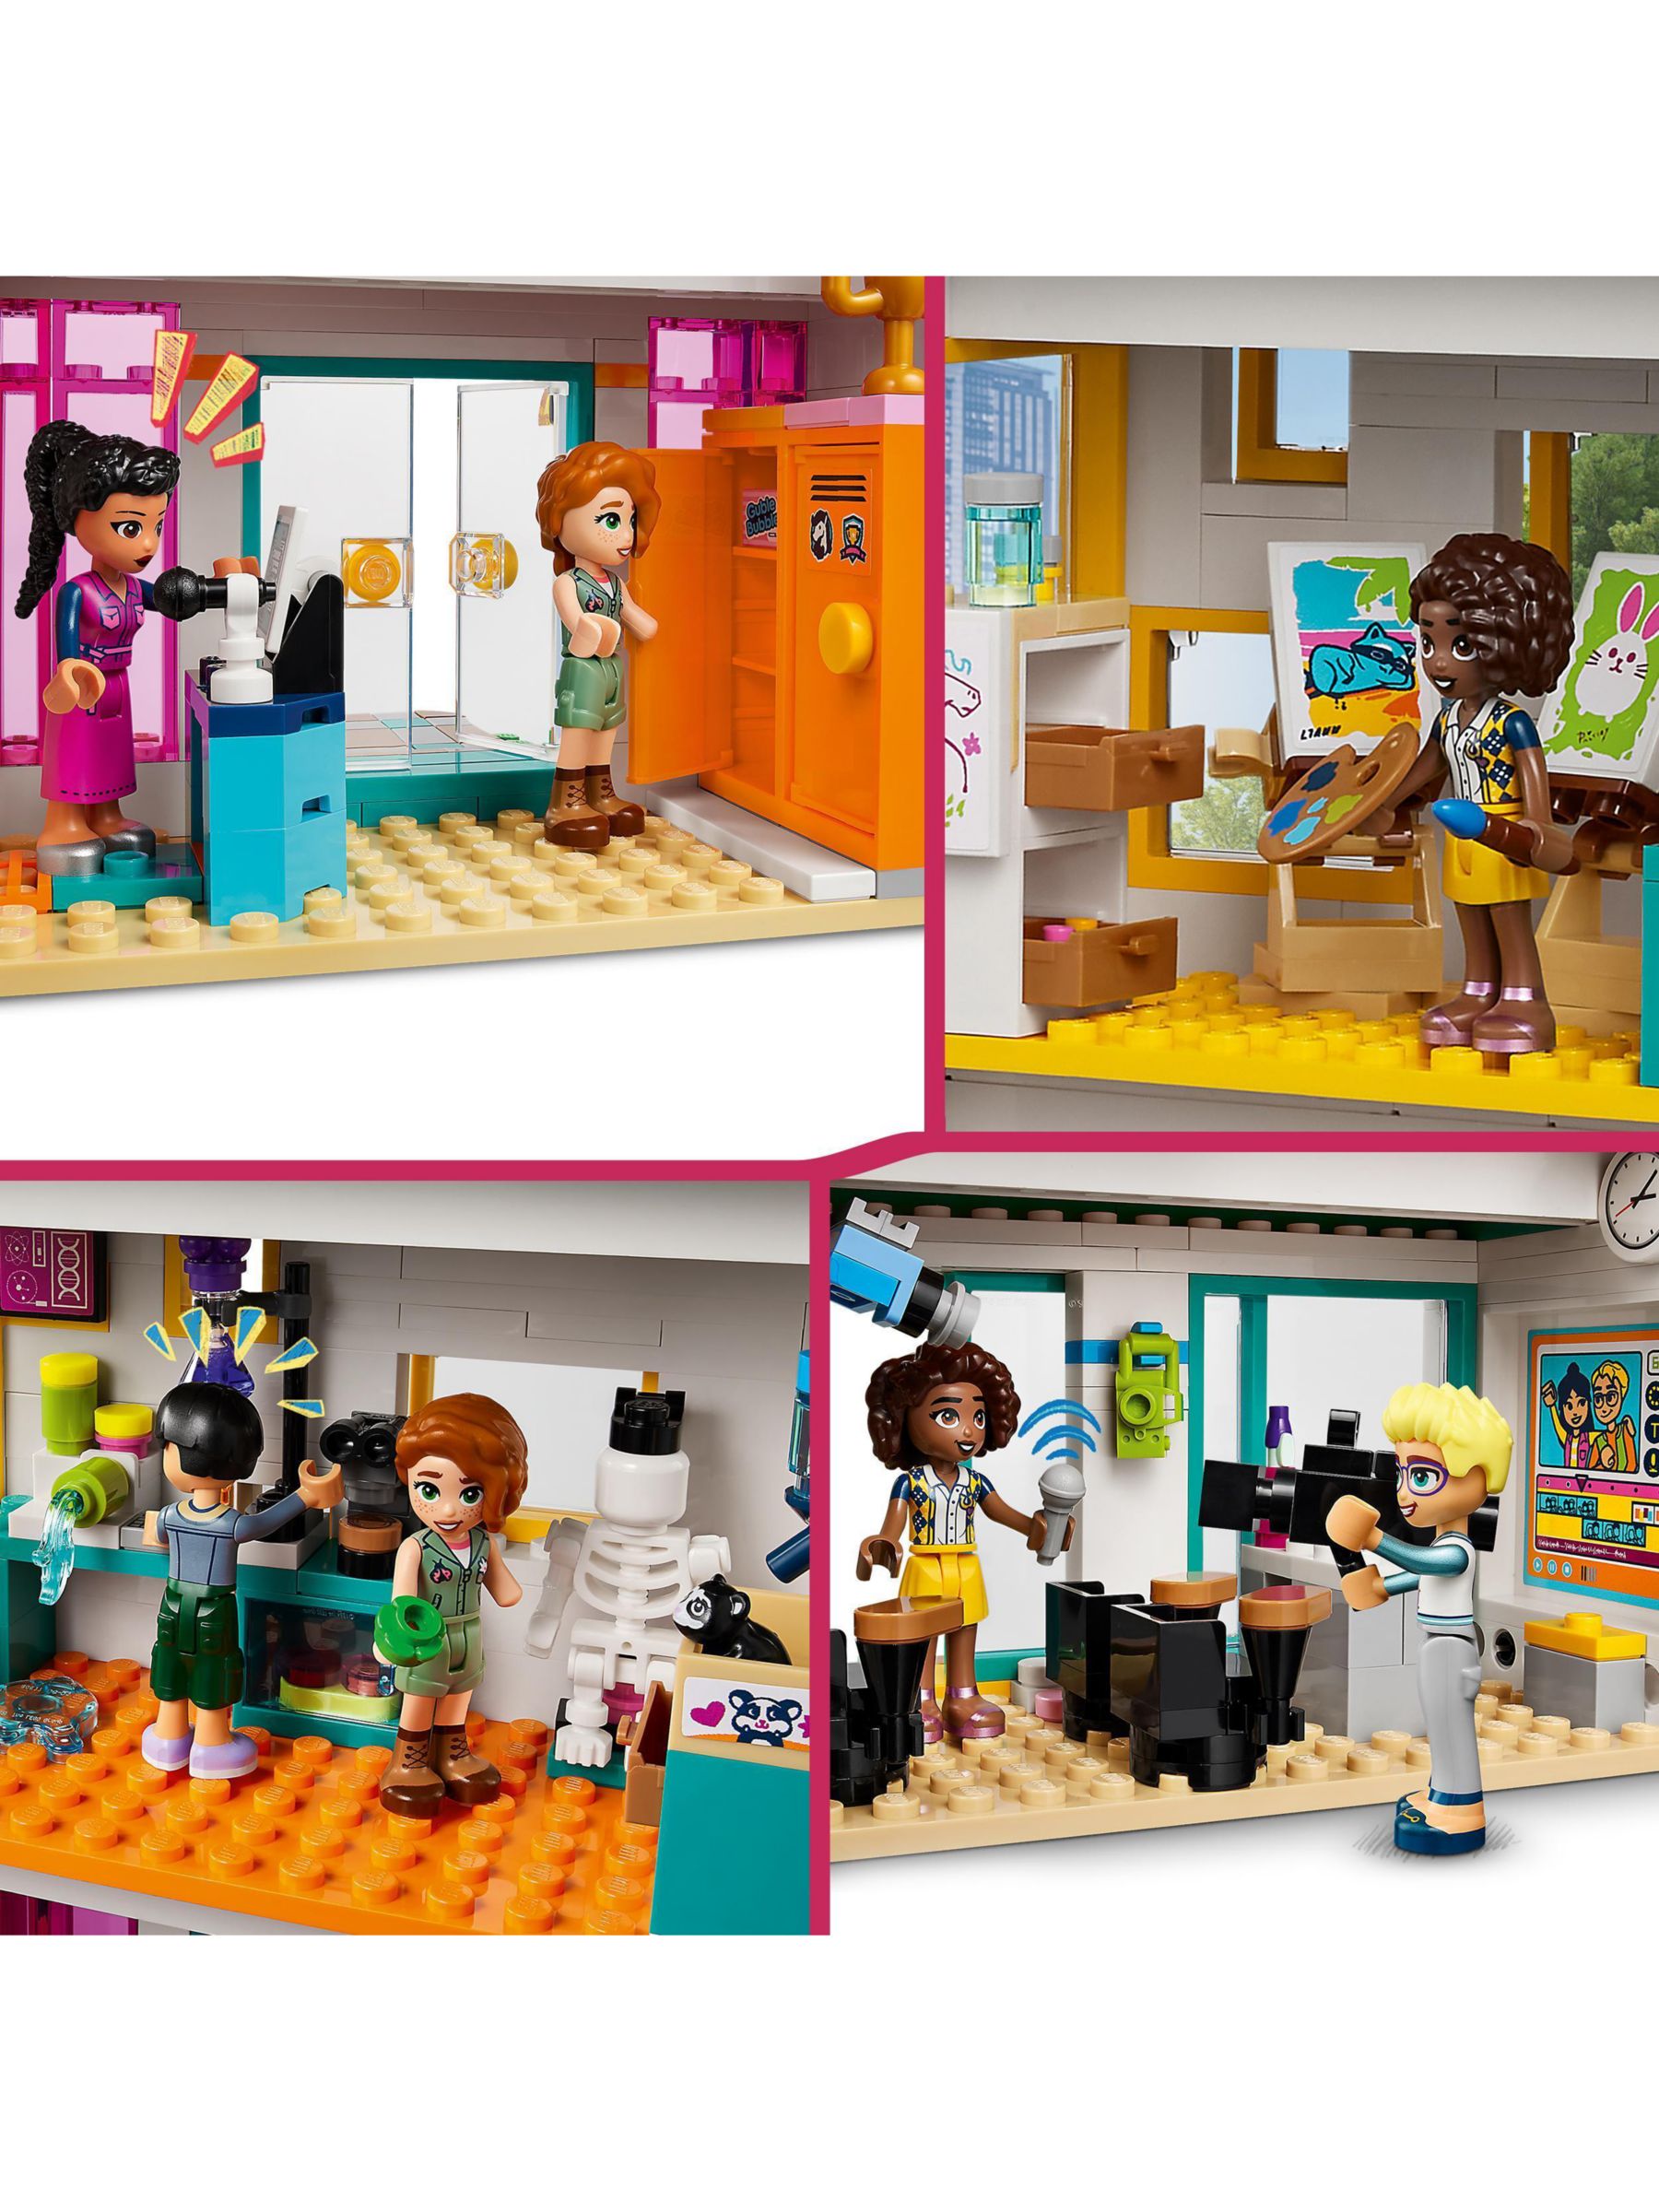 Lego Friends Heartlake International School Toy Set 41731 : Target